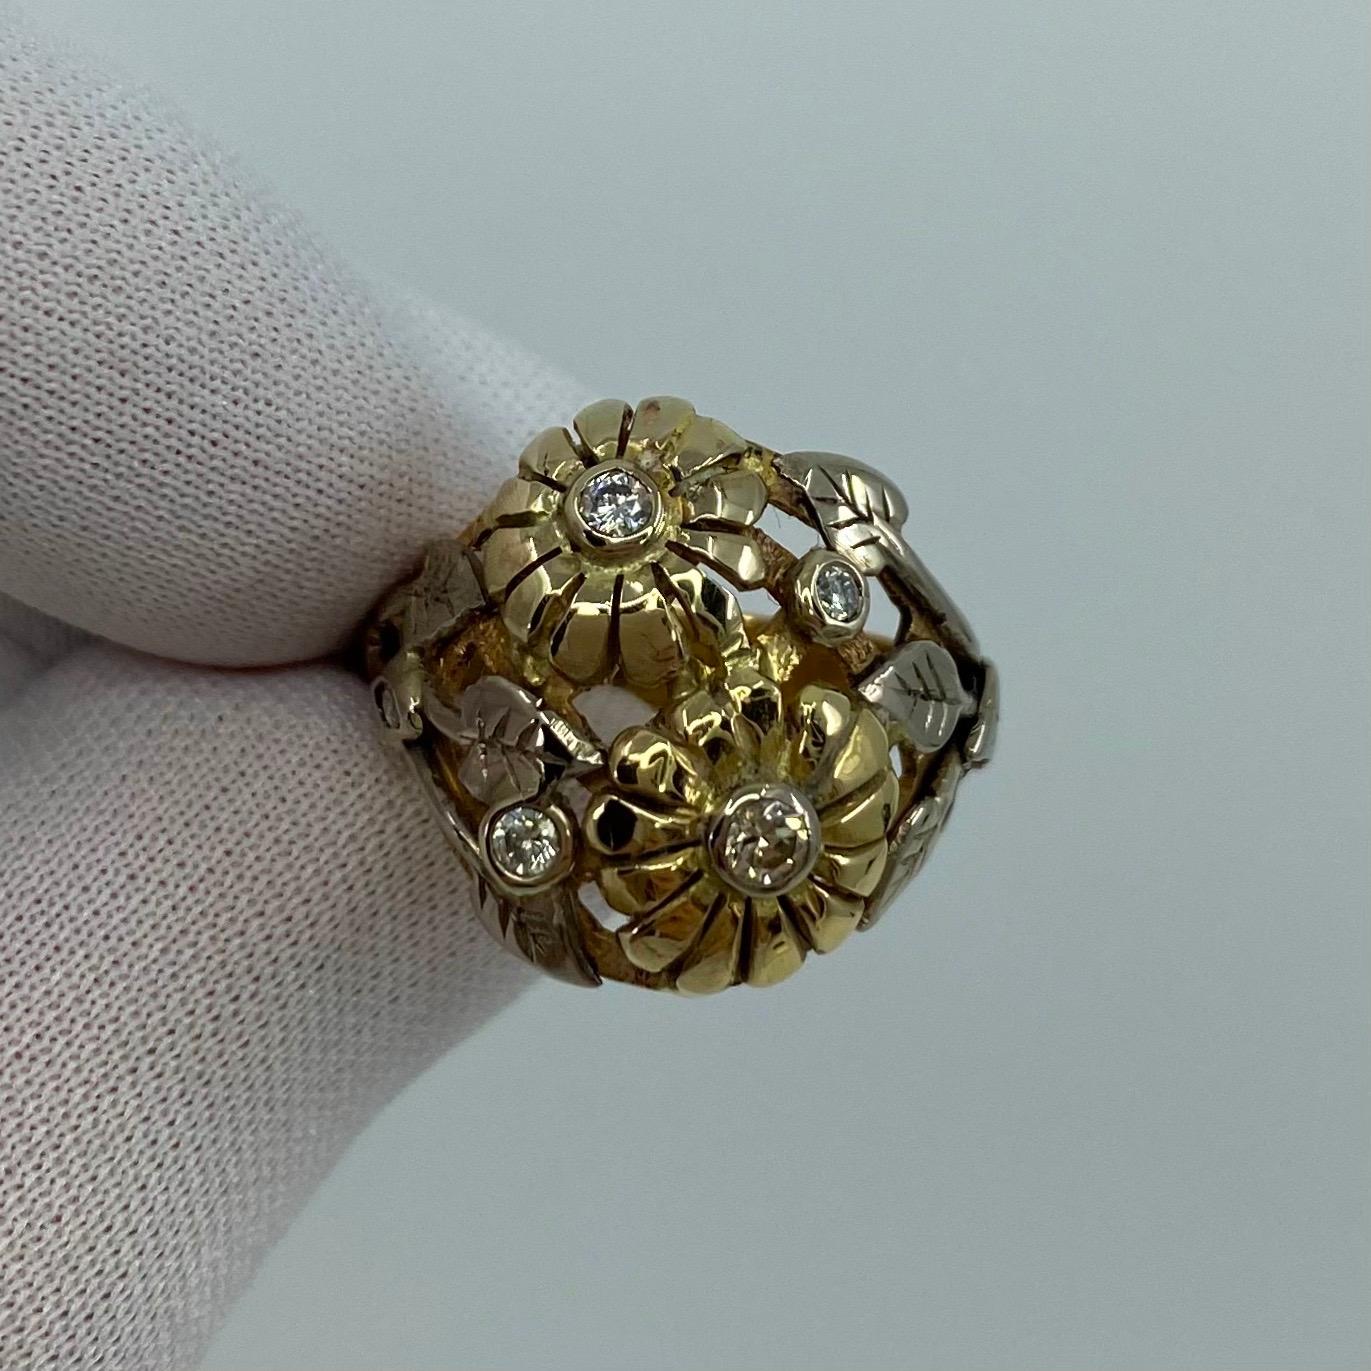 Handgefertigter Sommerblumenring aus 18 Karat Gold im Jugendstil.

Dies ist ein wunderschöner handgefertigter Ring mit einem einzigartigen herbstlichen Jugendstil-Design.
Der Ring ist vollständig handgefertigt und besteht aus 18 Karat Gelb-, Weiß-